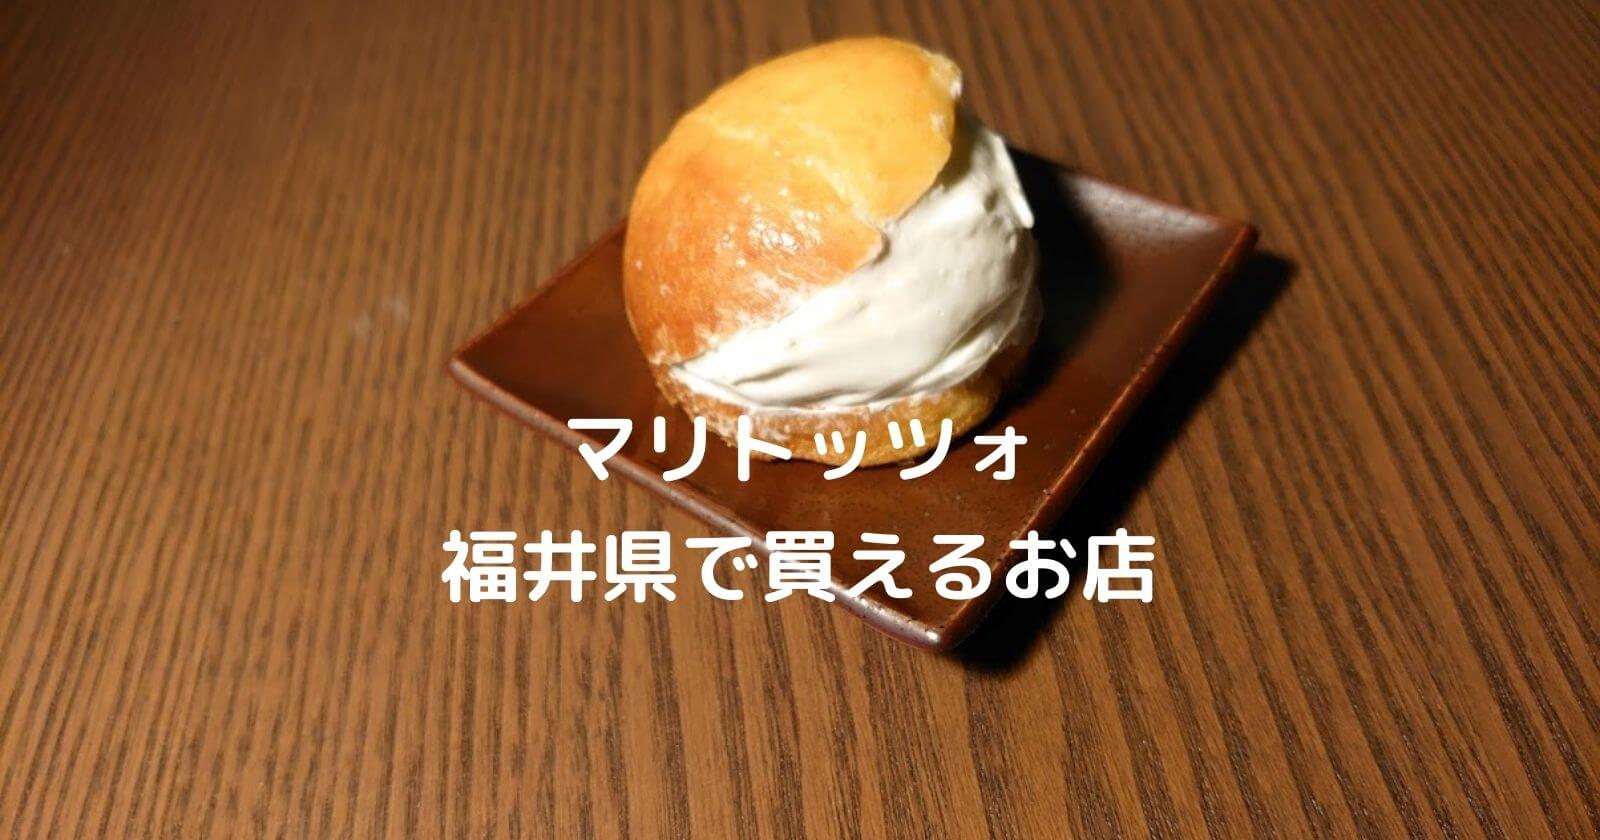 マリトッツォ 福井県で買える店 人気のおすすめパン屋などをご紹介